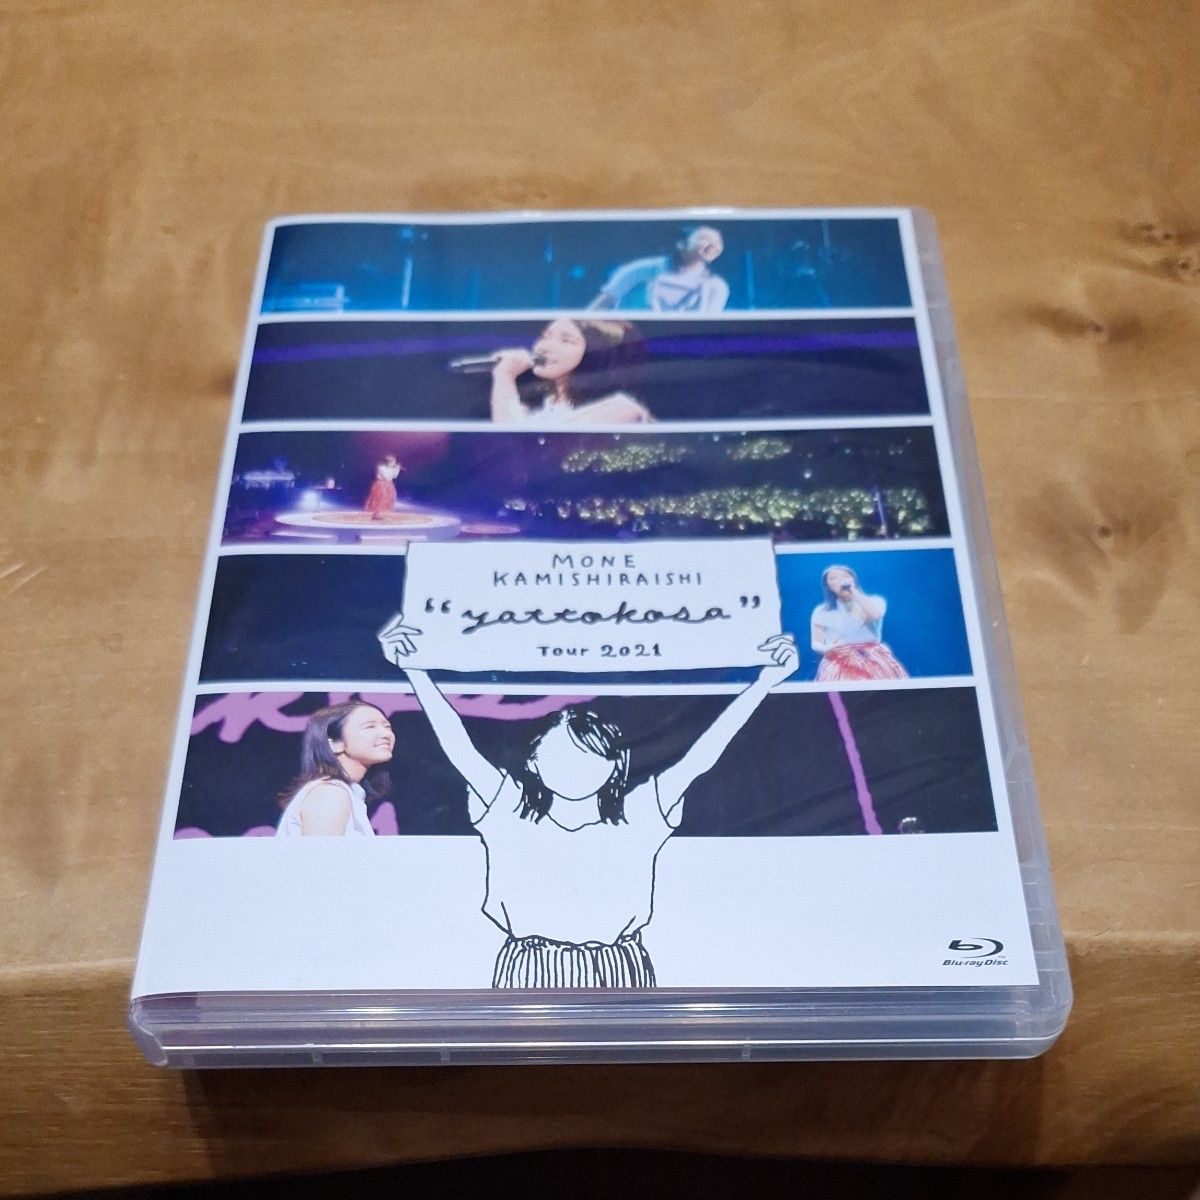 上白石萌音 Blu-ray/Mone Kamishiraishi 『yattokosa』 Tour 2021 22/1/19発売